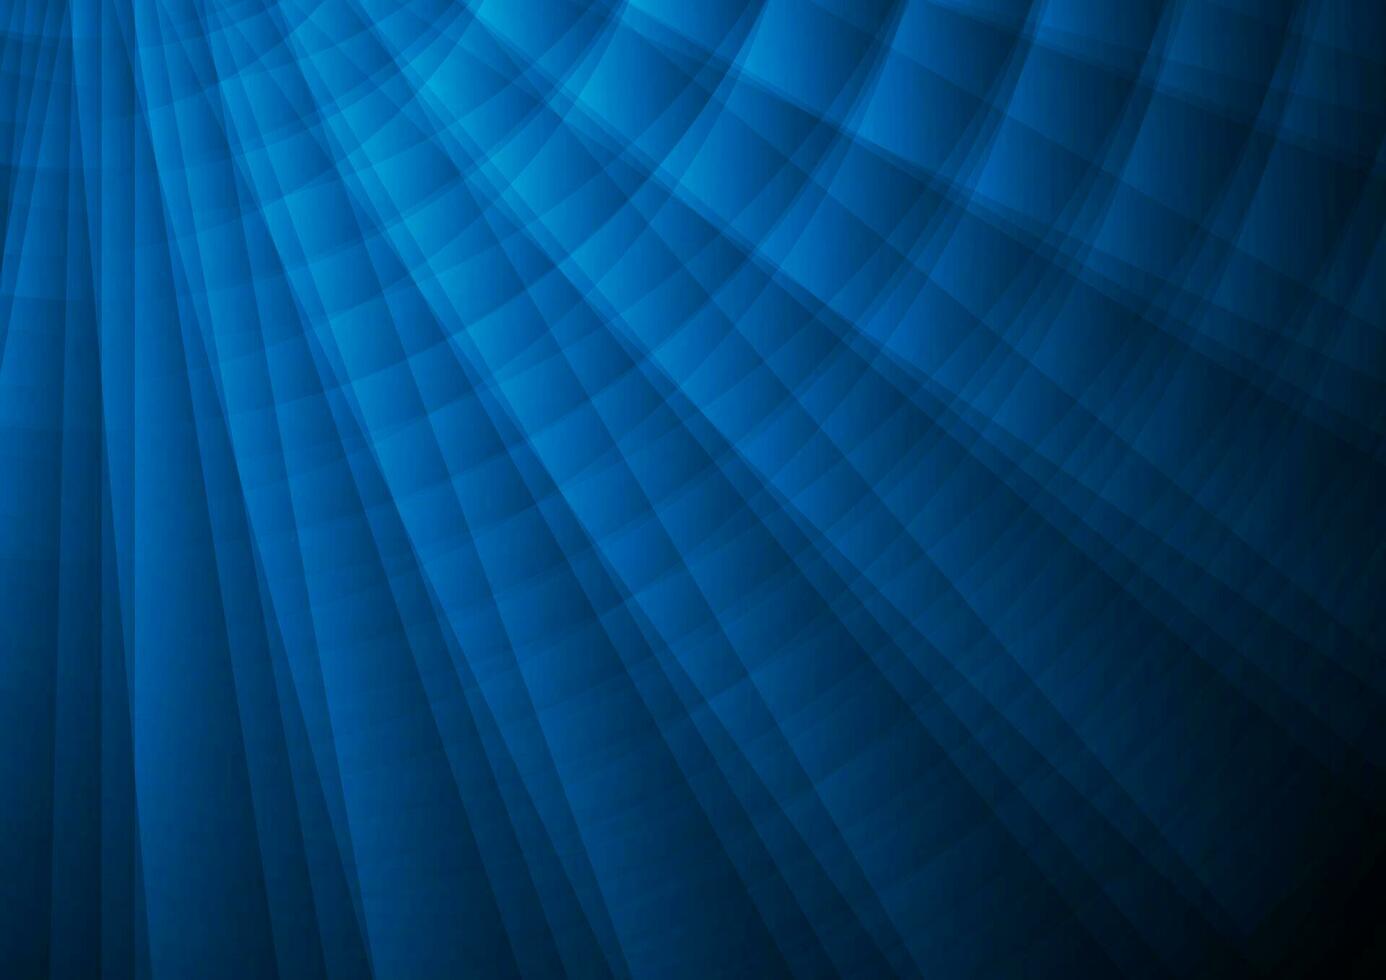 dunkel Blau abstrakt Hi-Tech Hintergrund vektor